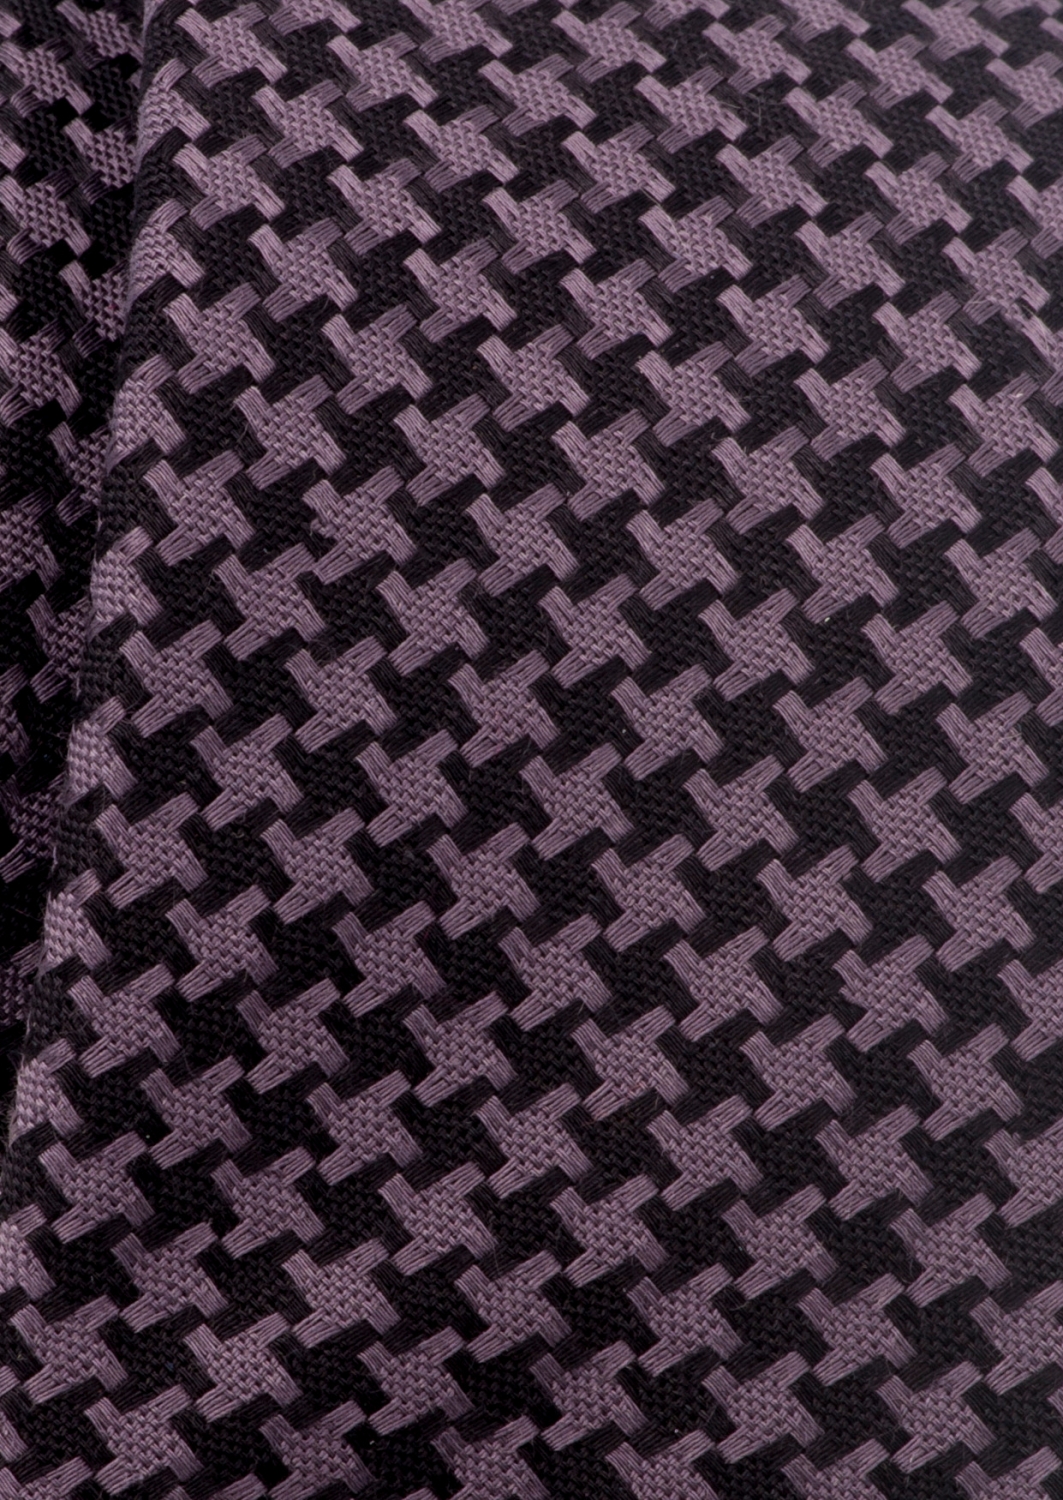 Eterna Krawatte 9815 online kaufen